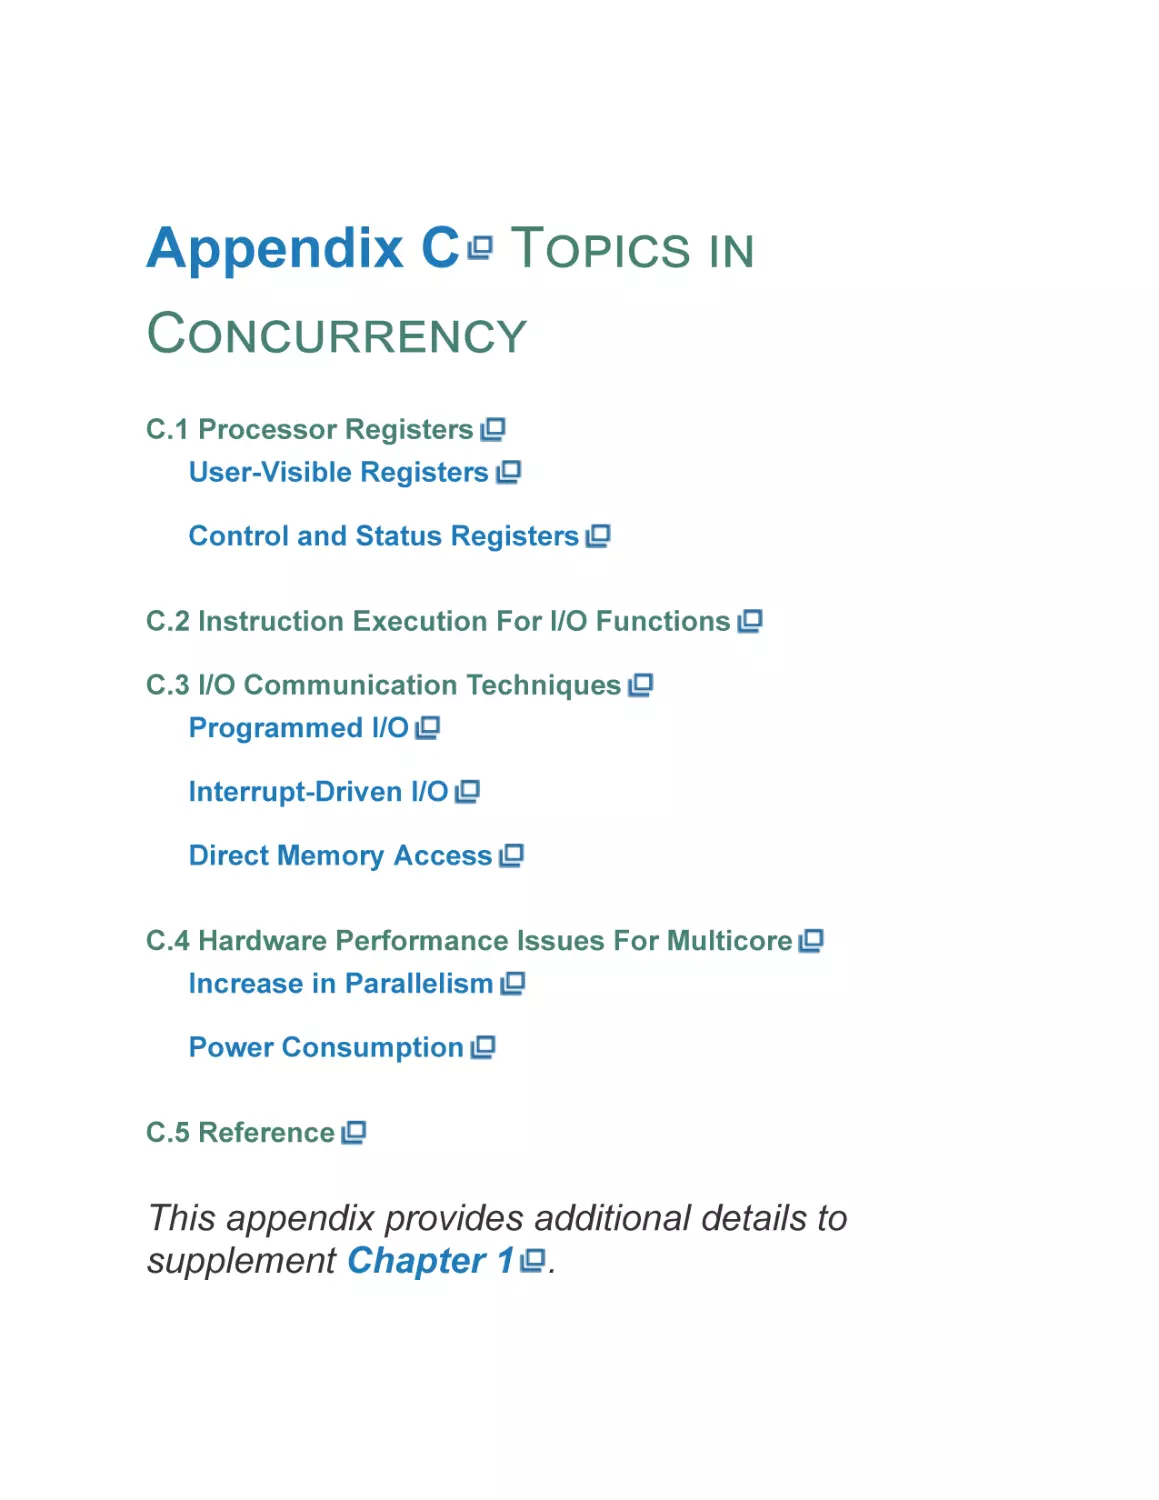 Appendix C Topics in Concurrency